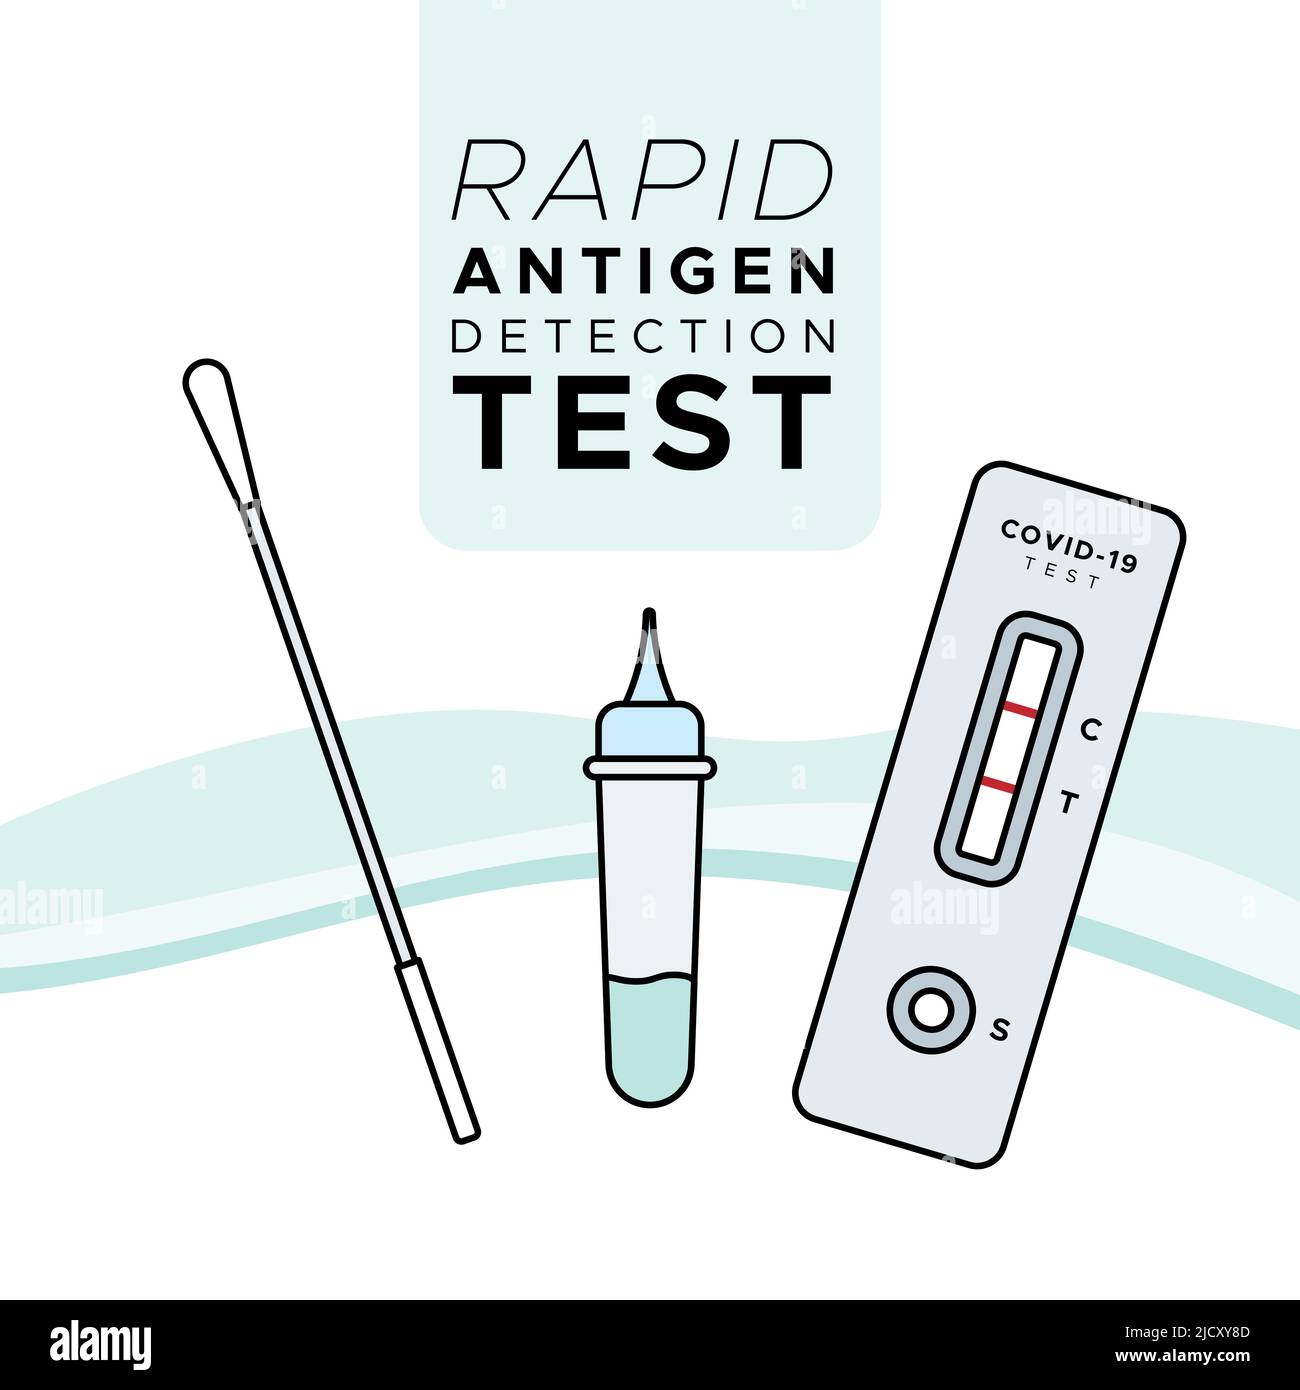 Testkit für die schnelle Antigen-Erkennung. Test mit Nasenabstrich. Covid 19. Gefüllte Symbole. Vektorgrafik, flaches Design Stock Vektor